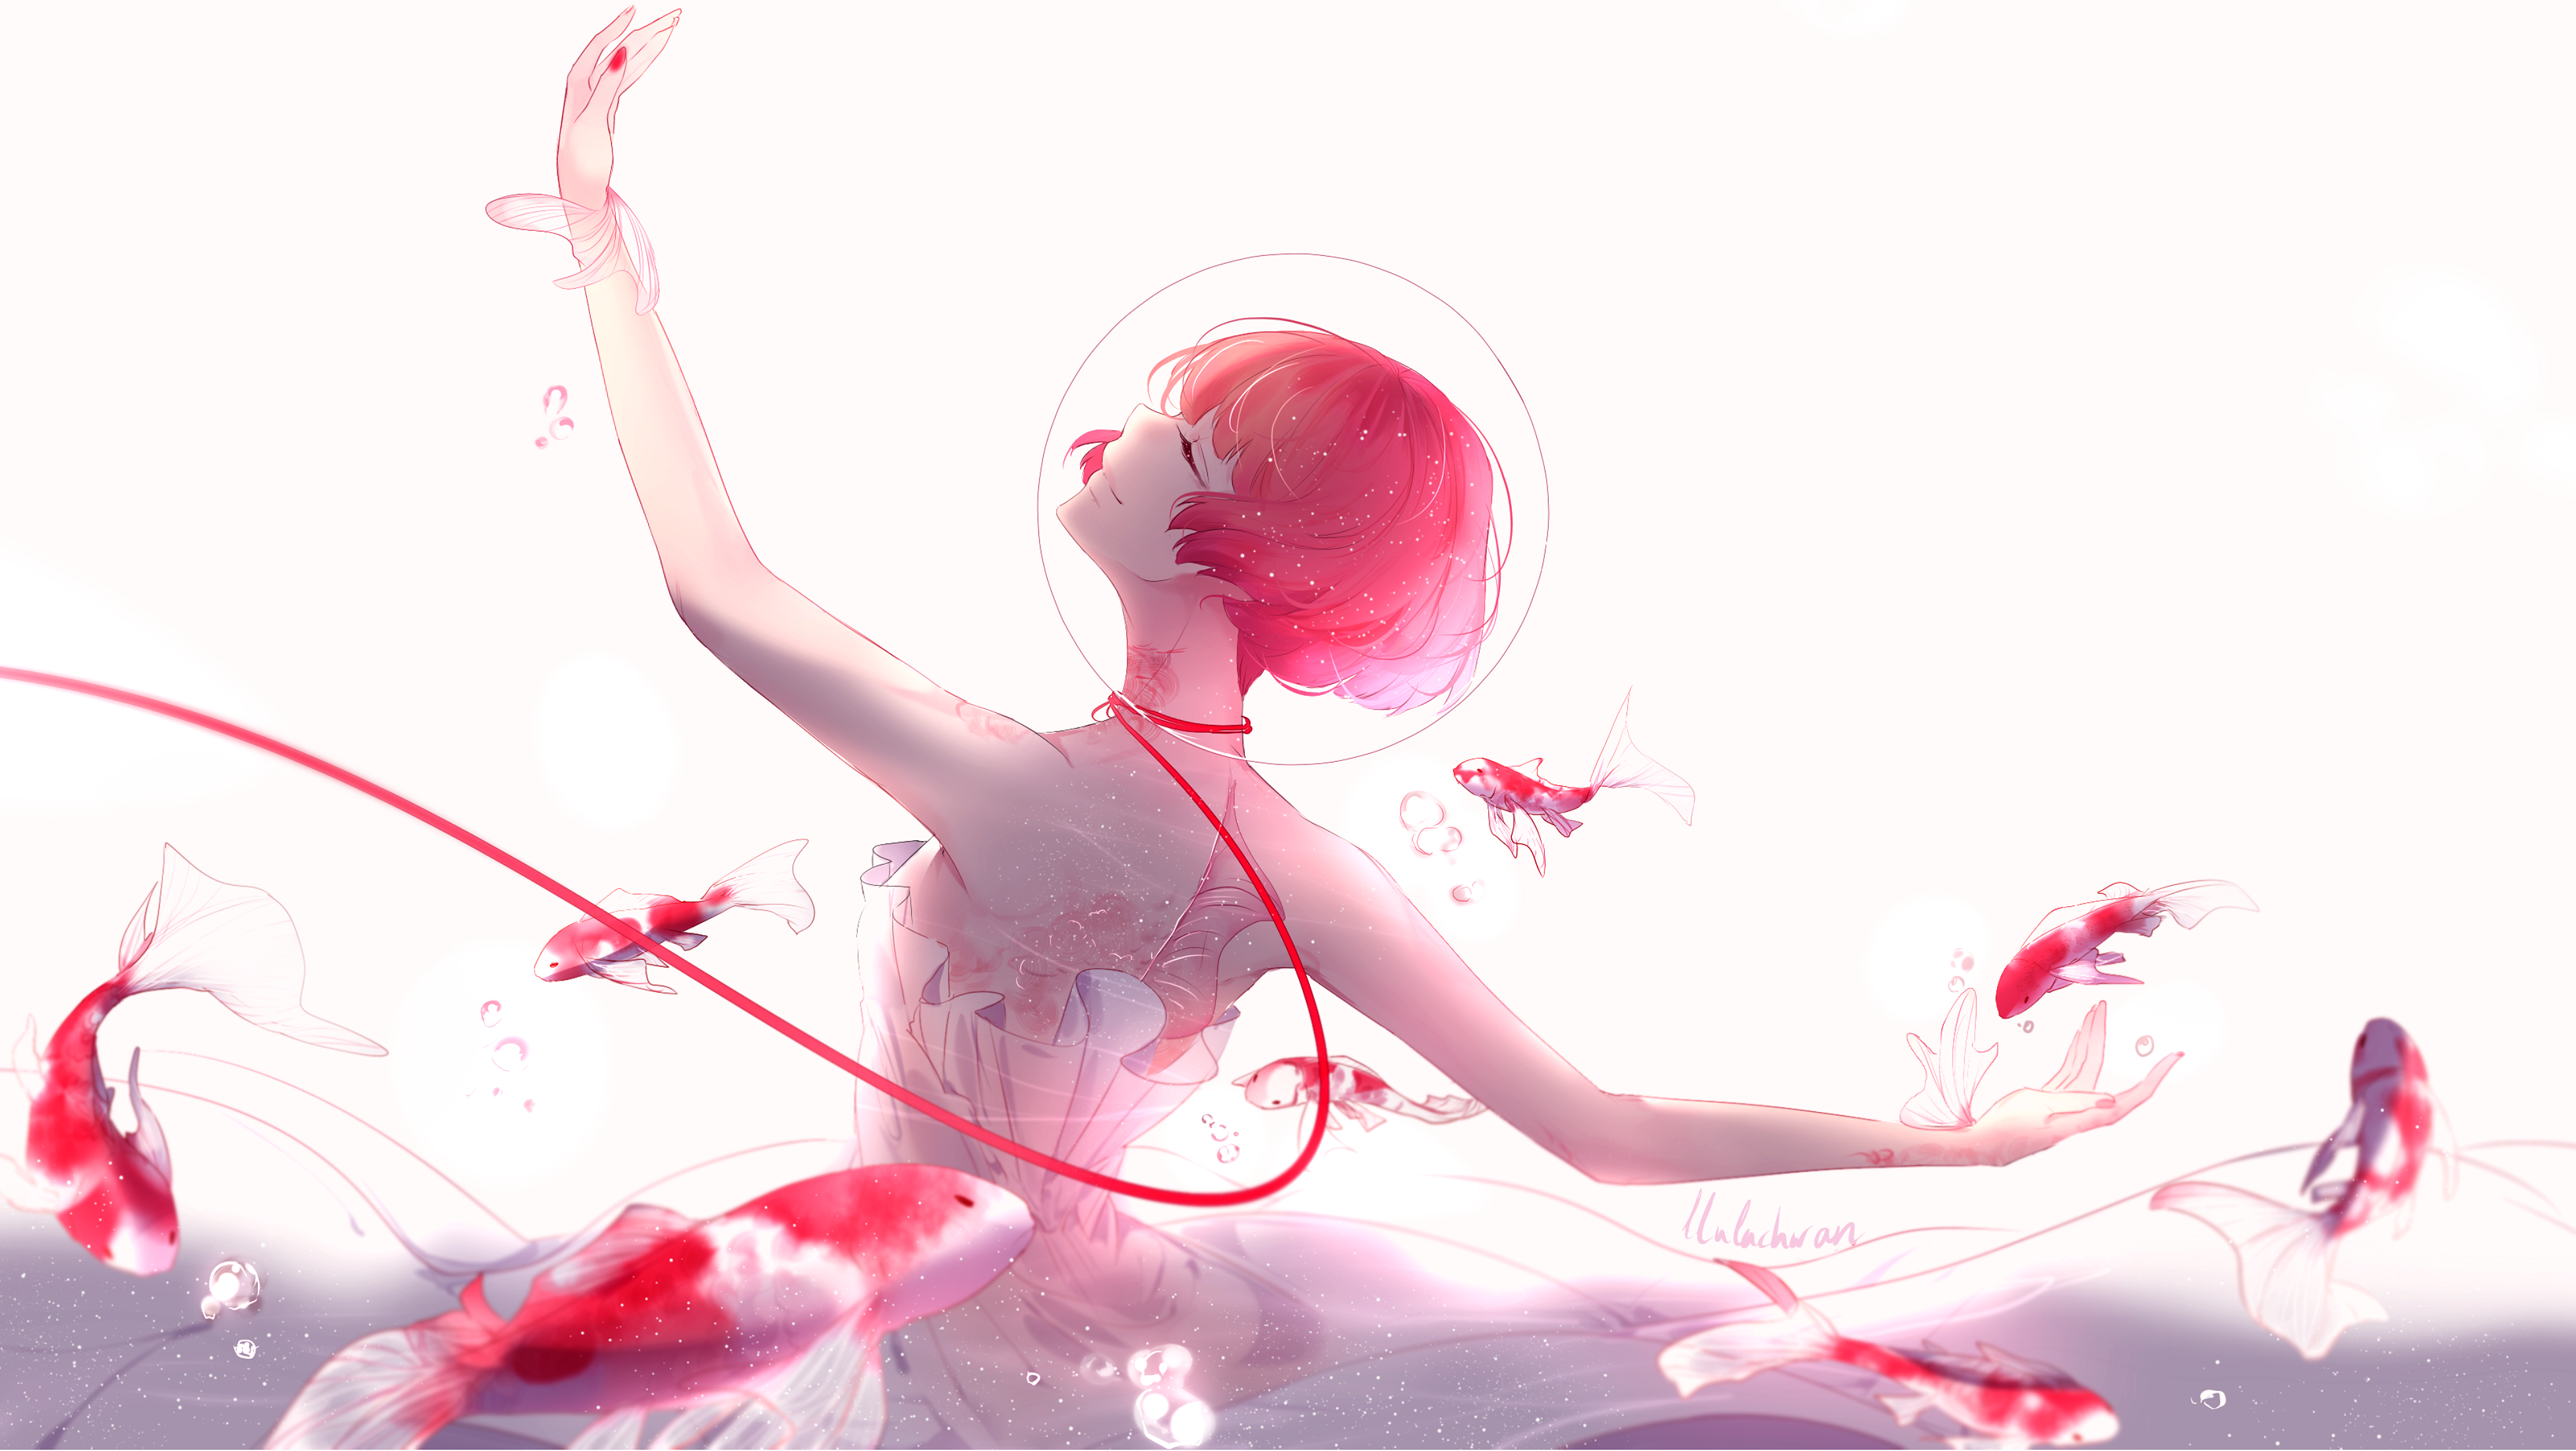 #Ballet dancer, K, #Anime girl, #Koi fishes, #Pink